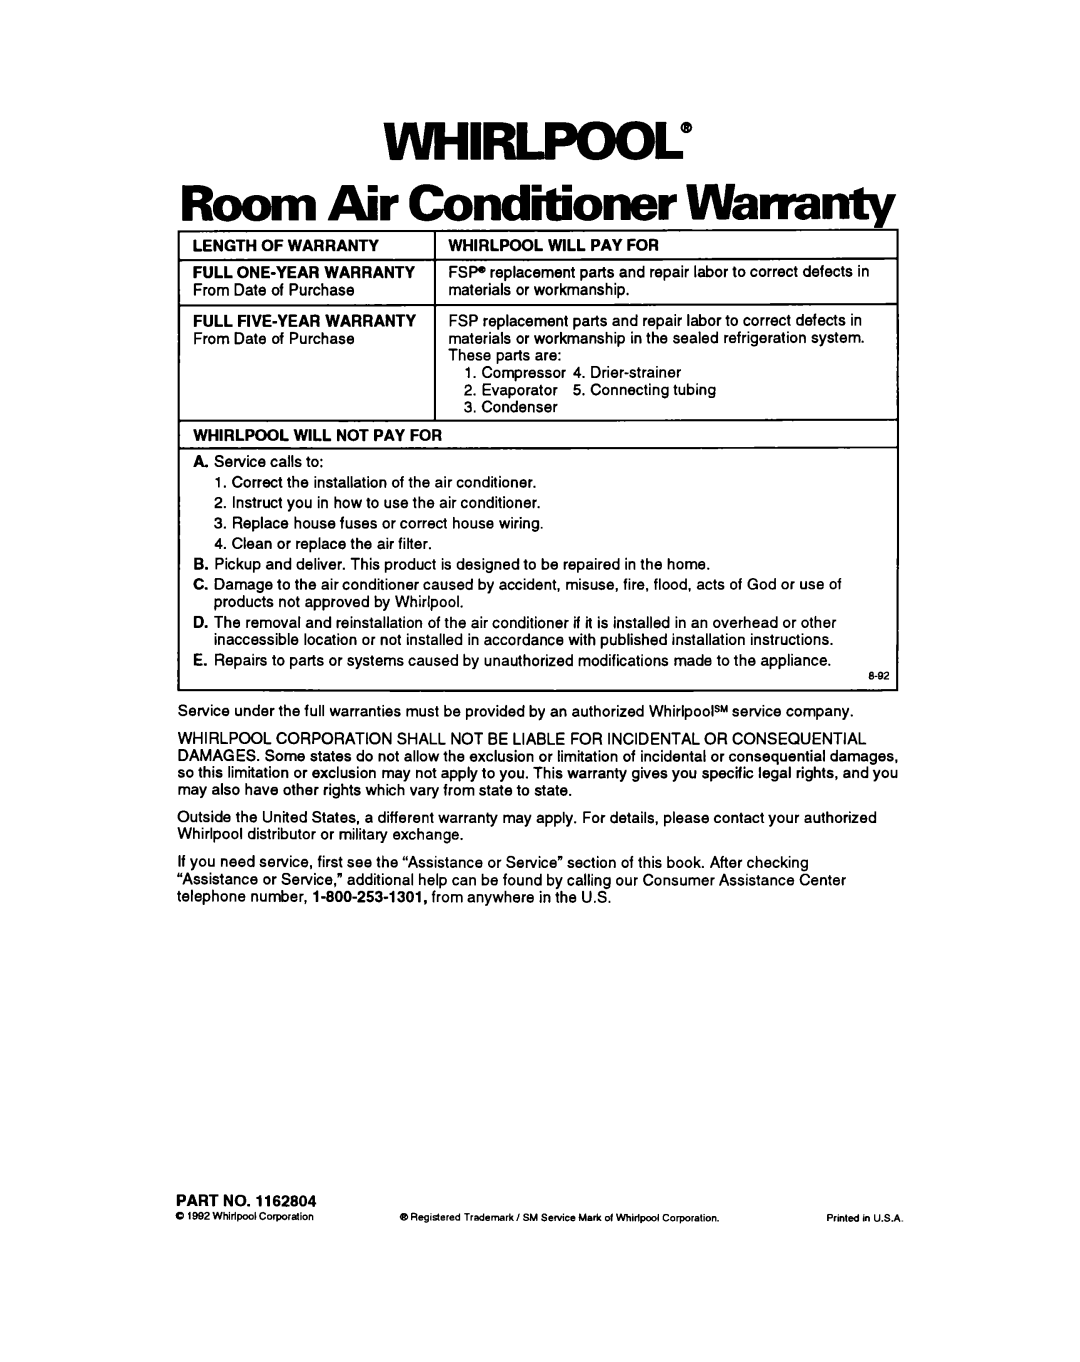 Whirlpool ACM052 warranty wHlRLpooL”, Room Air Conditioner Warranty 